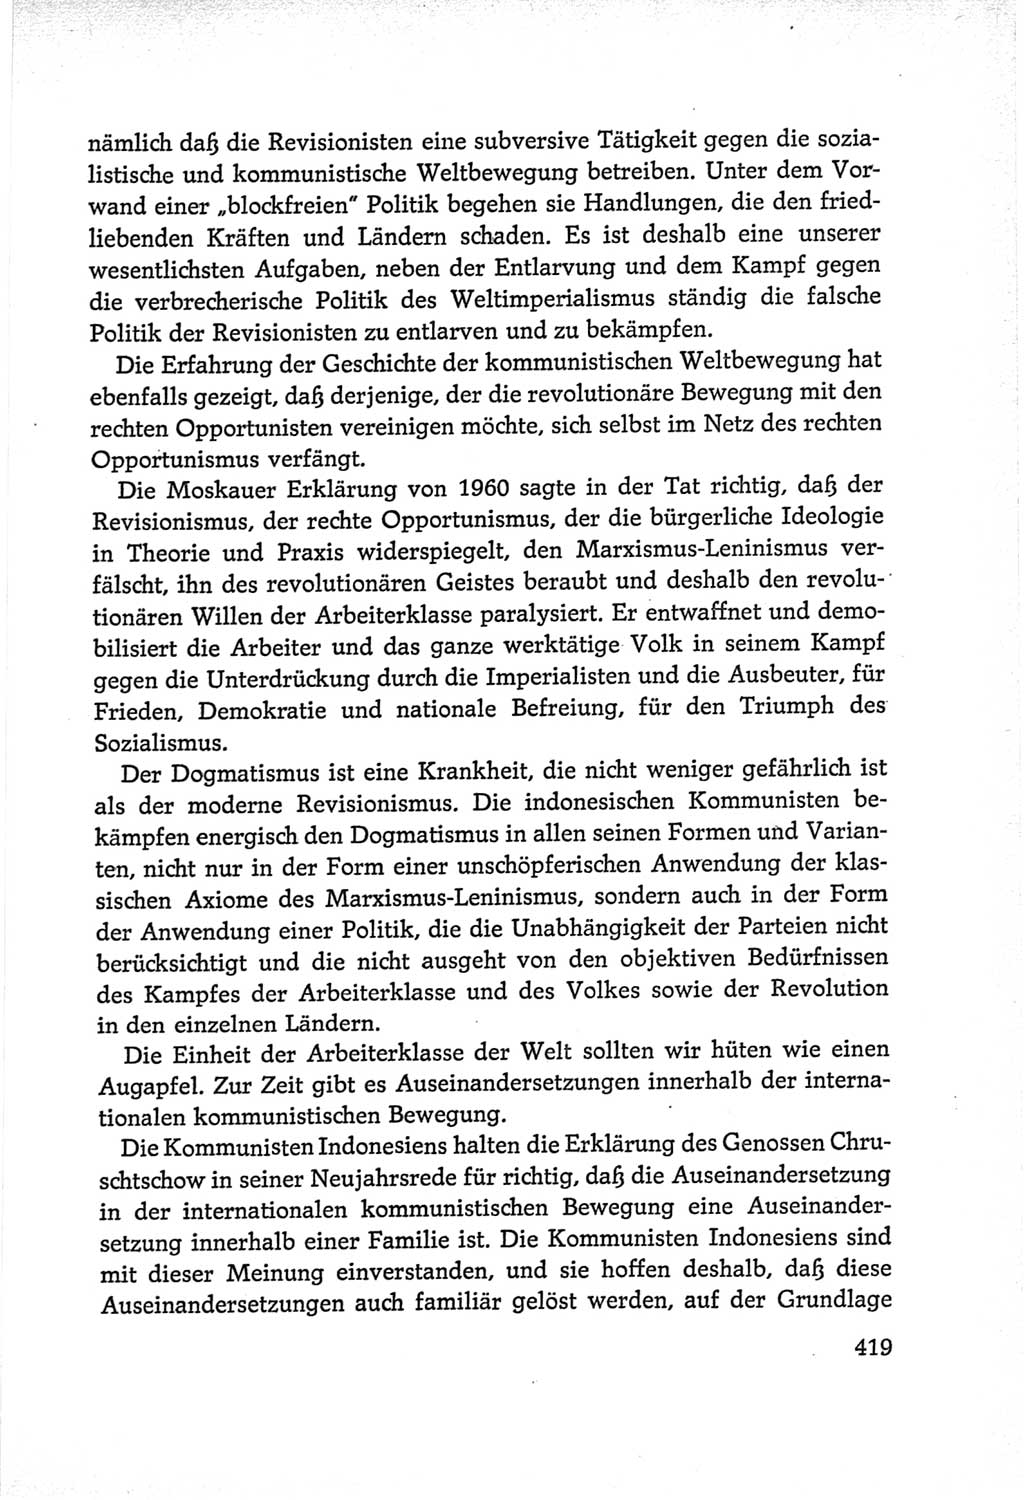 Protokoll der Verhandlungen des Ⅵ. Parteitages der Sozialistischen Einheitspartei Deutschlands (SED) [Deutsche Demokratische Republik (DDR)] 1963, Band Ⅱ, Seite 419 (Prot. Verh. Ⅵ. PT SED DDR 1963, Bd. Ⅱ, S. 419)